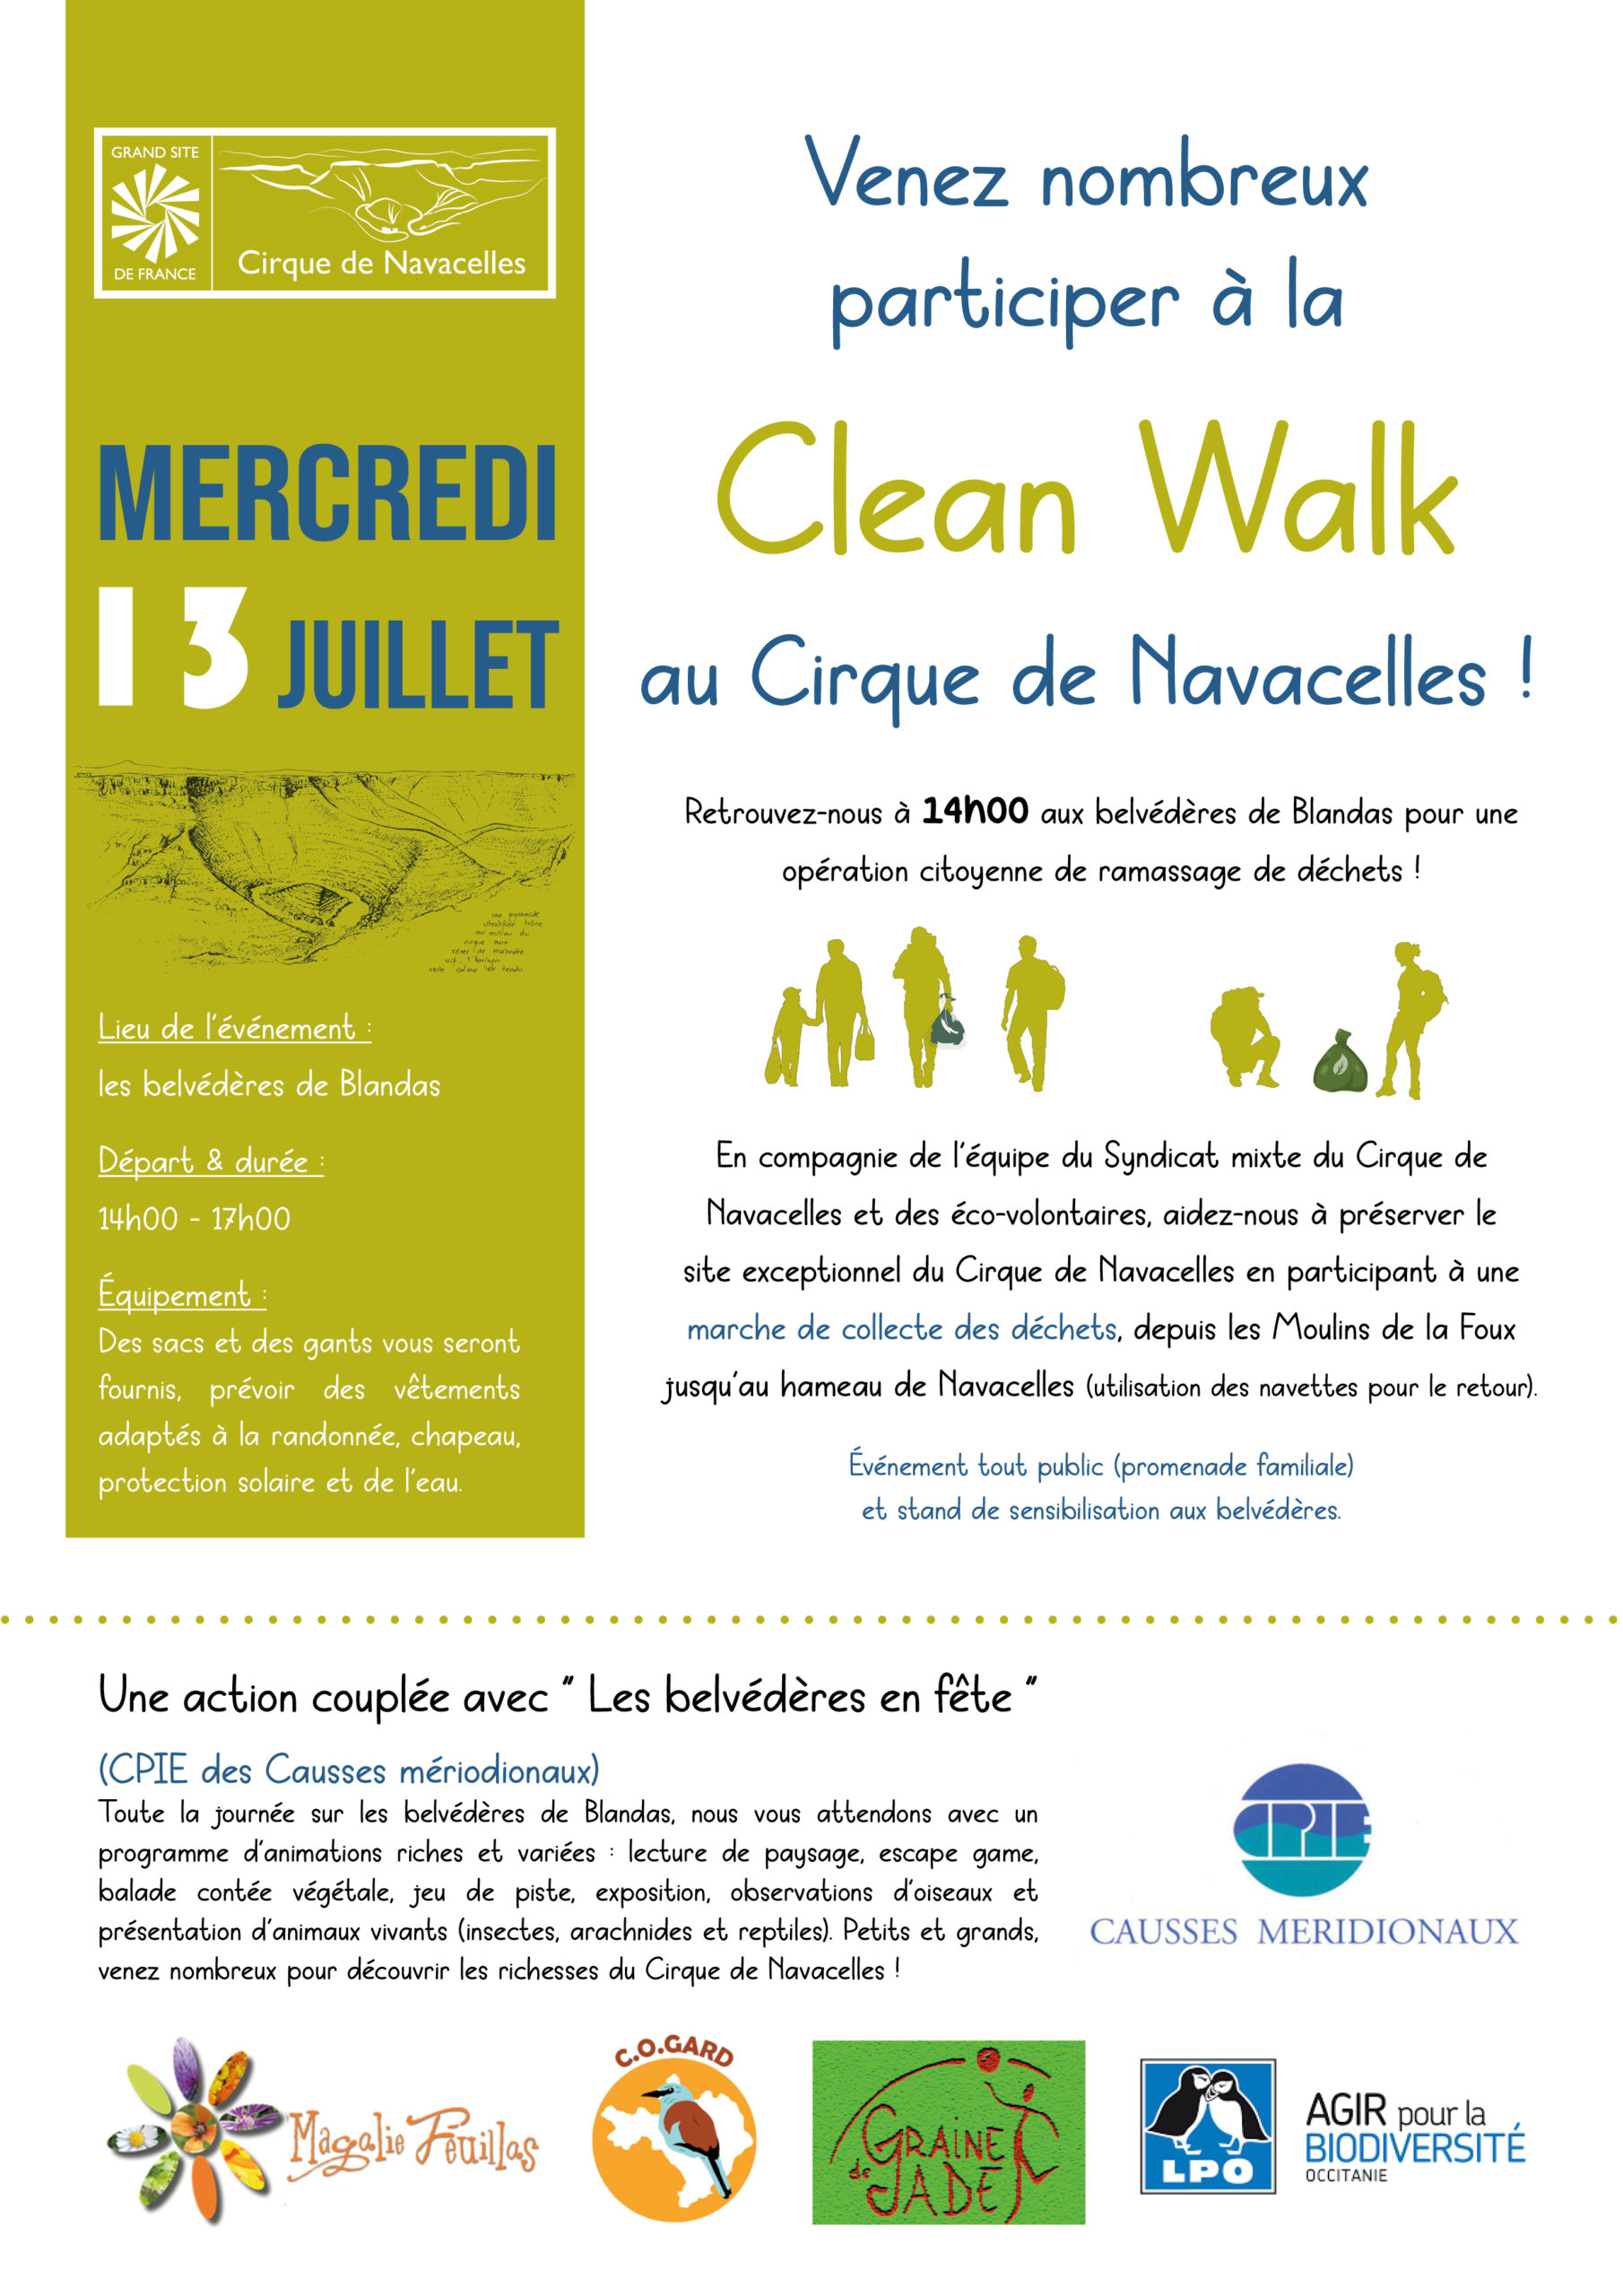 Participez à une Clean Walk mercredi 13 Juillet